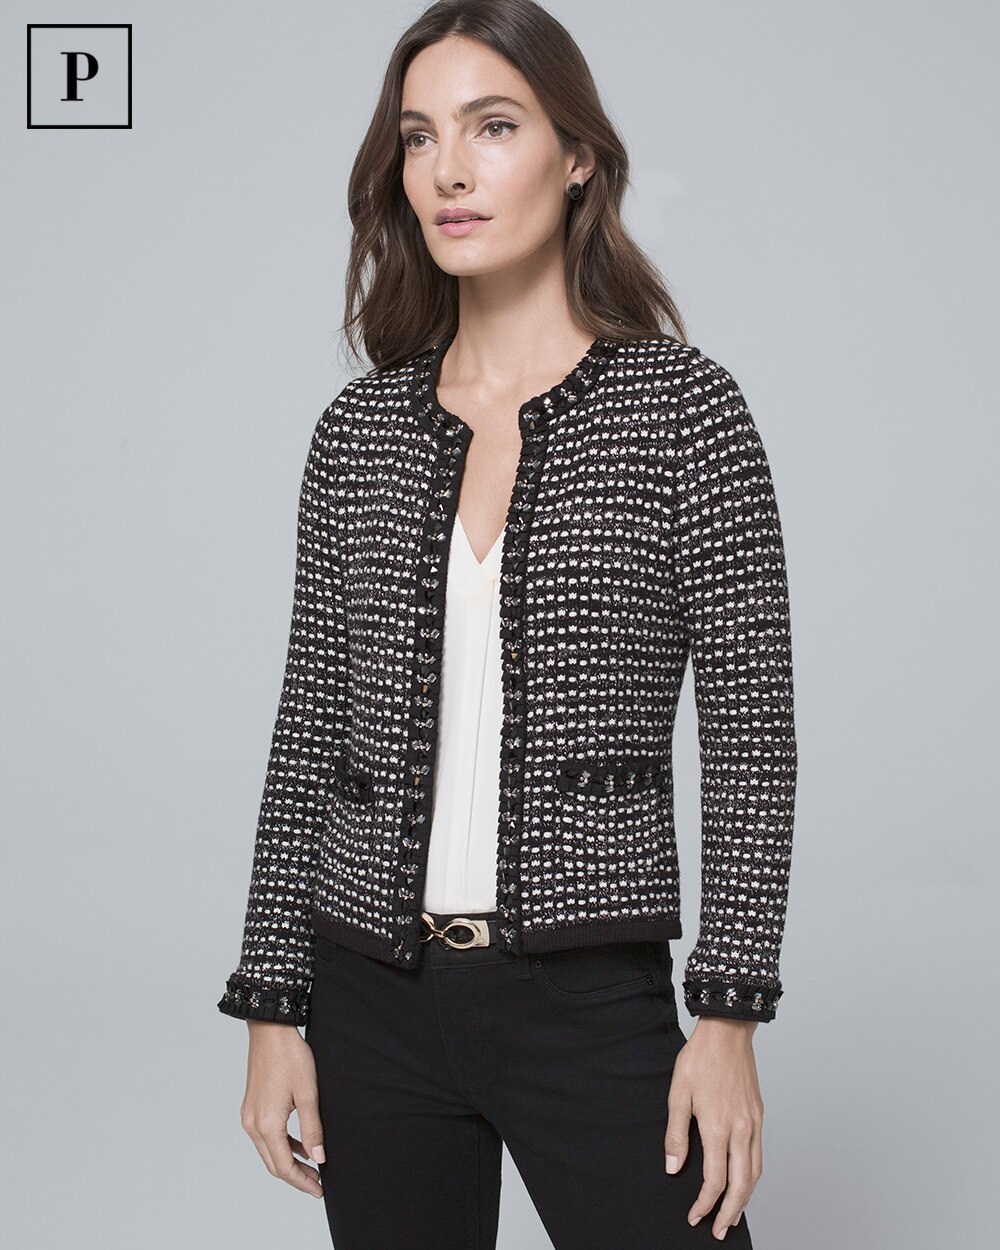 Petite Embellished Sweater Jacket - White House Black Market